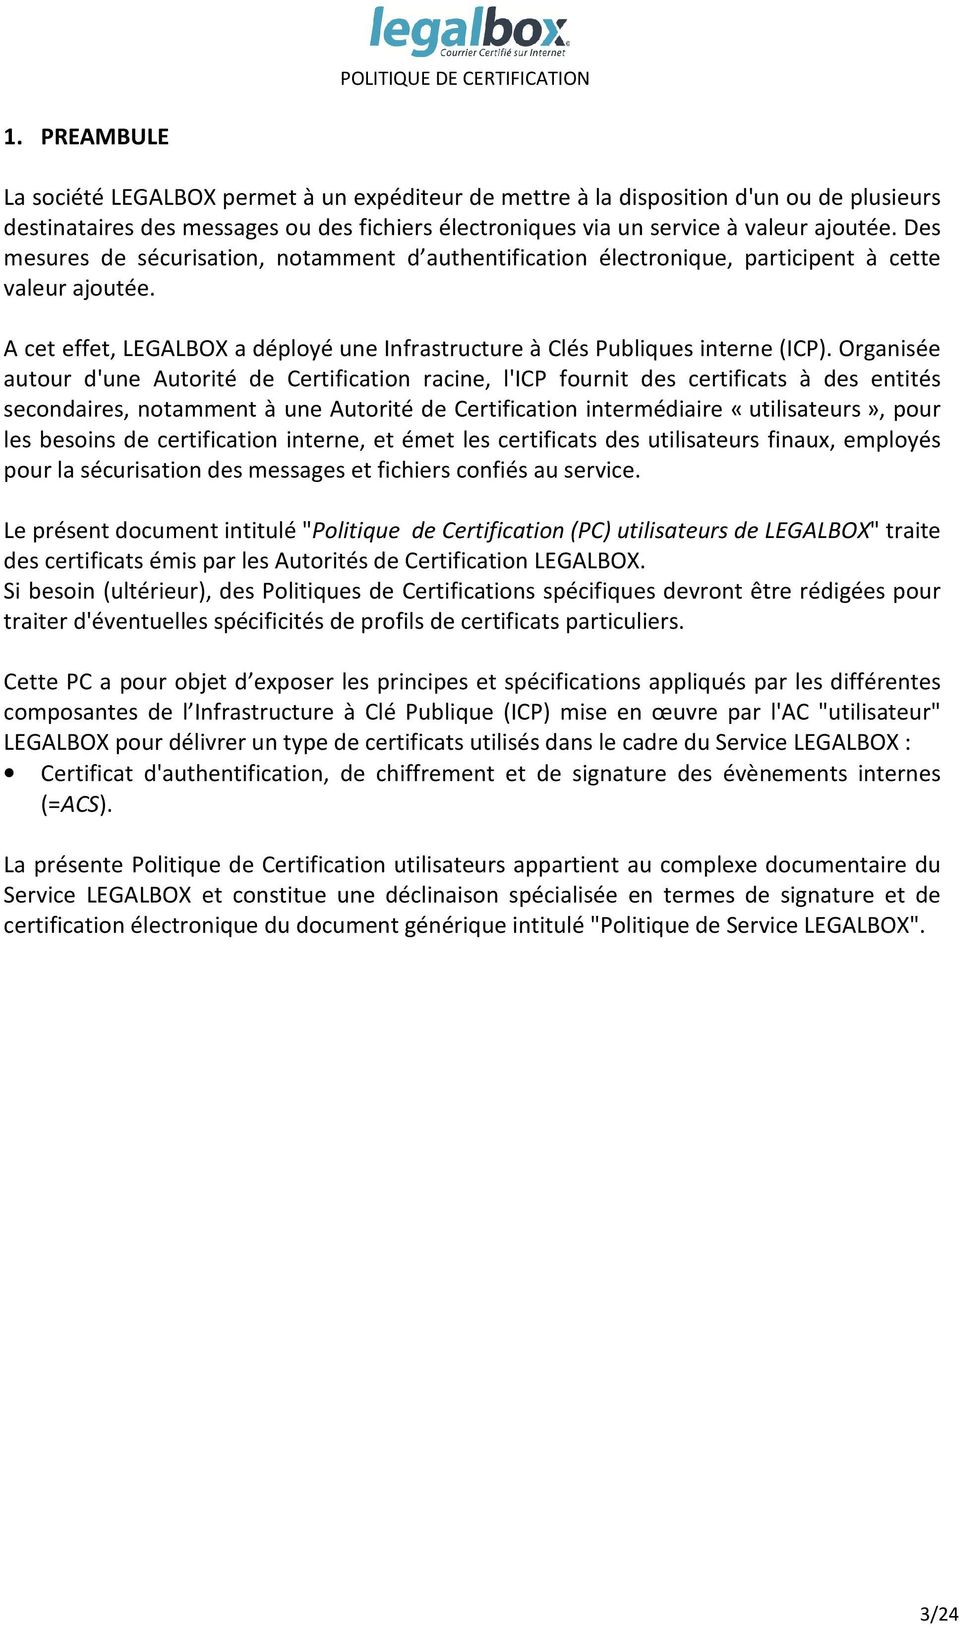 Organisée autour d'une Autorité de Certification racine, l'icp fournit des certificats à des entités secondaires, notamment à une Autorité de Certification intermédiaire «utilisateurs», pour les